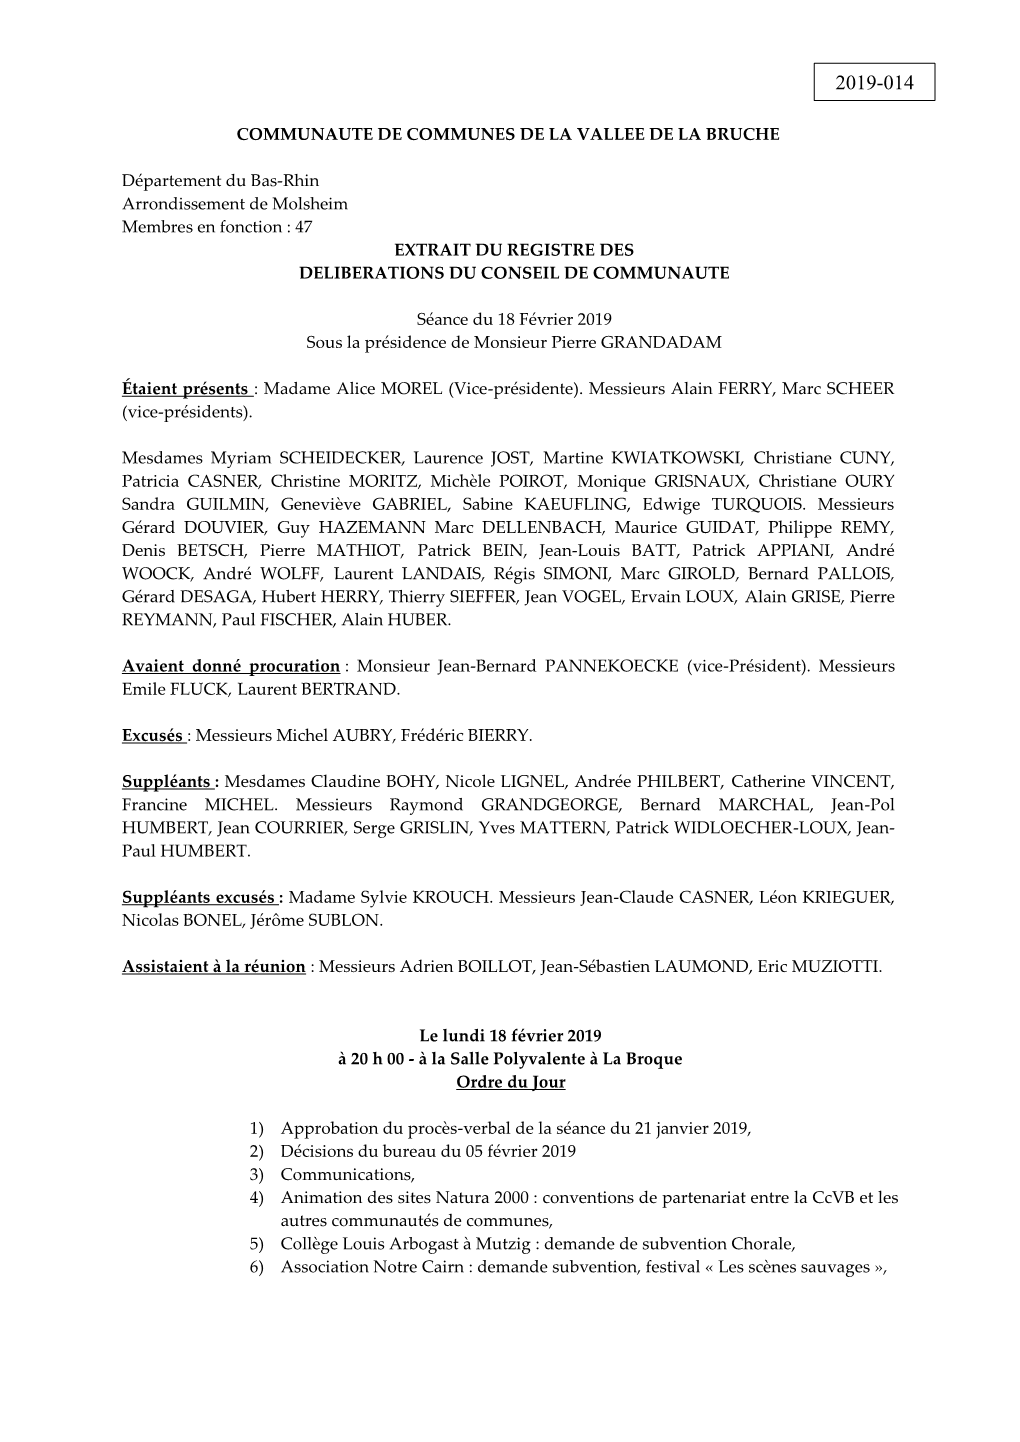 COMMUNAUTE DE COMMUNES DE LA VALLEE DE LA BRUCHE Département Du Bas-Rhin Arrondissement De Molsheim Membres En Fonction : 47 EX